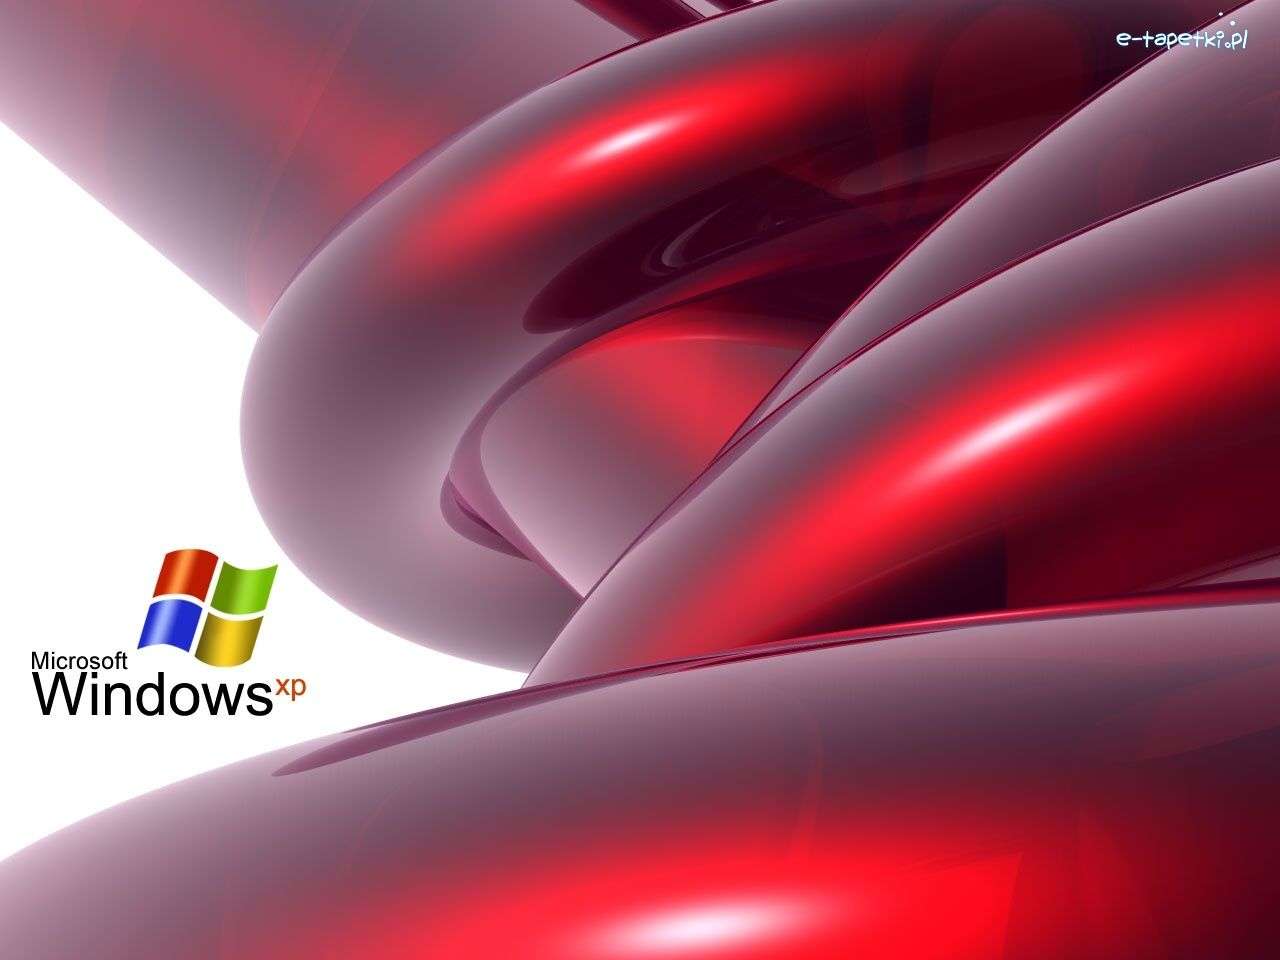 Sistema operacional, Windows, XP quebra-cabeças online